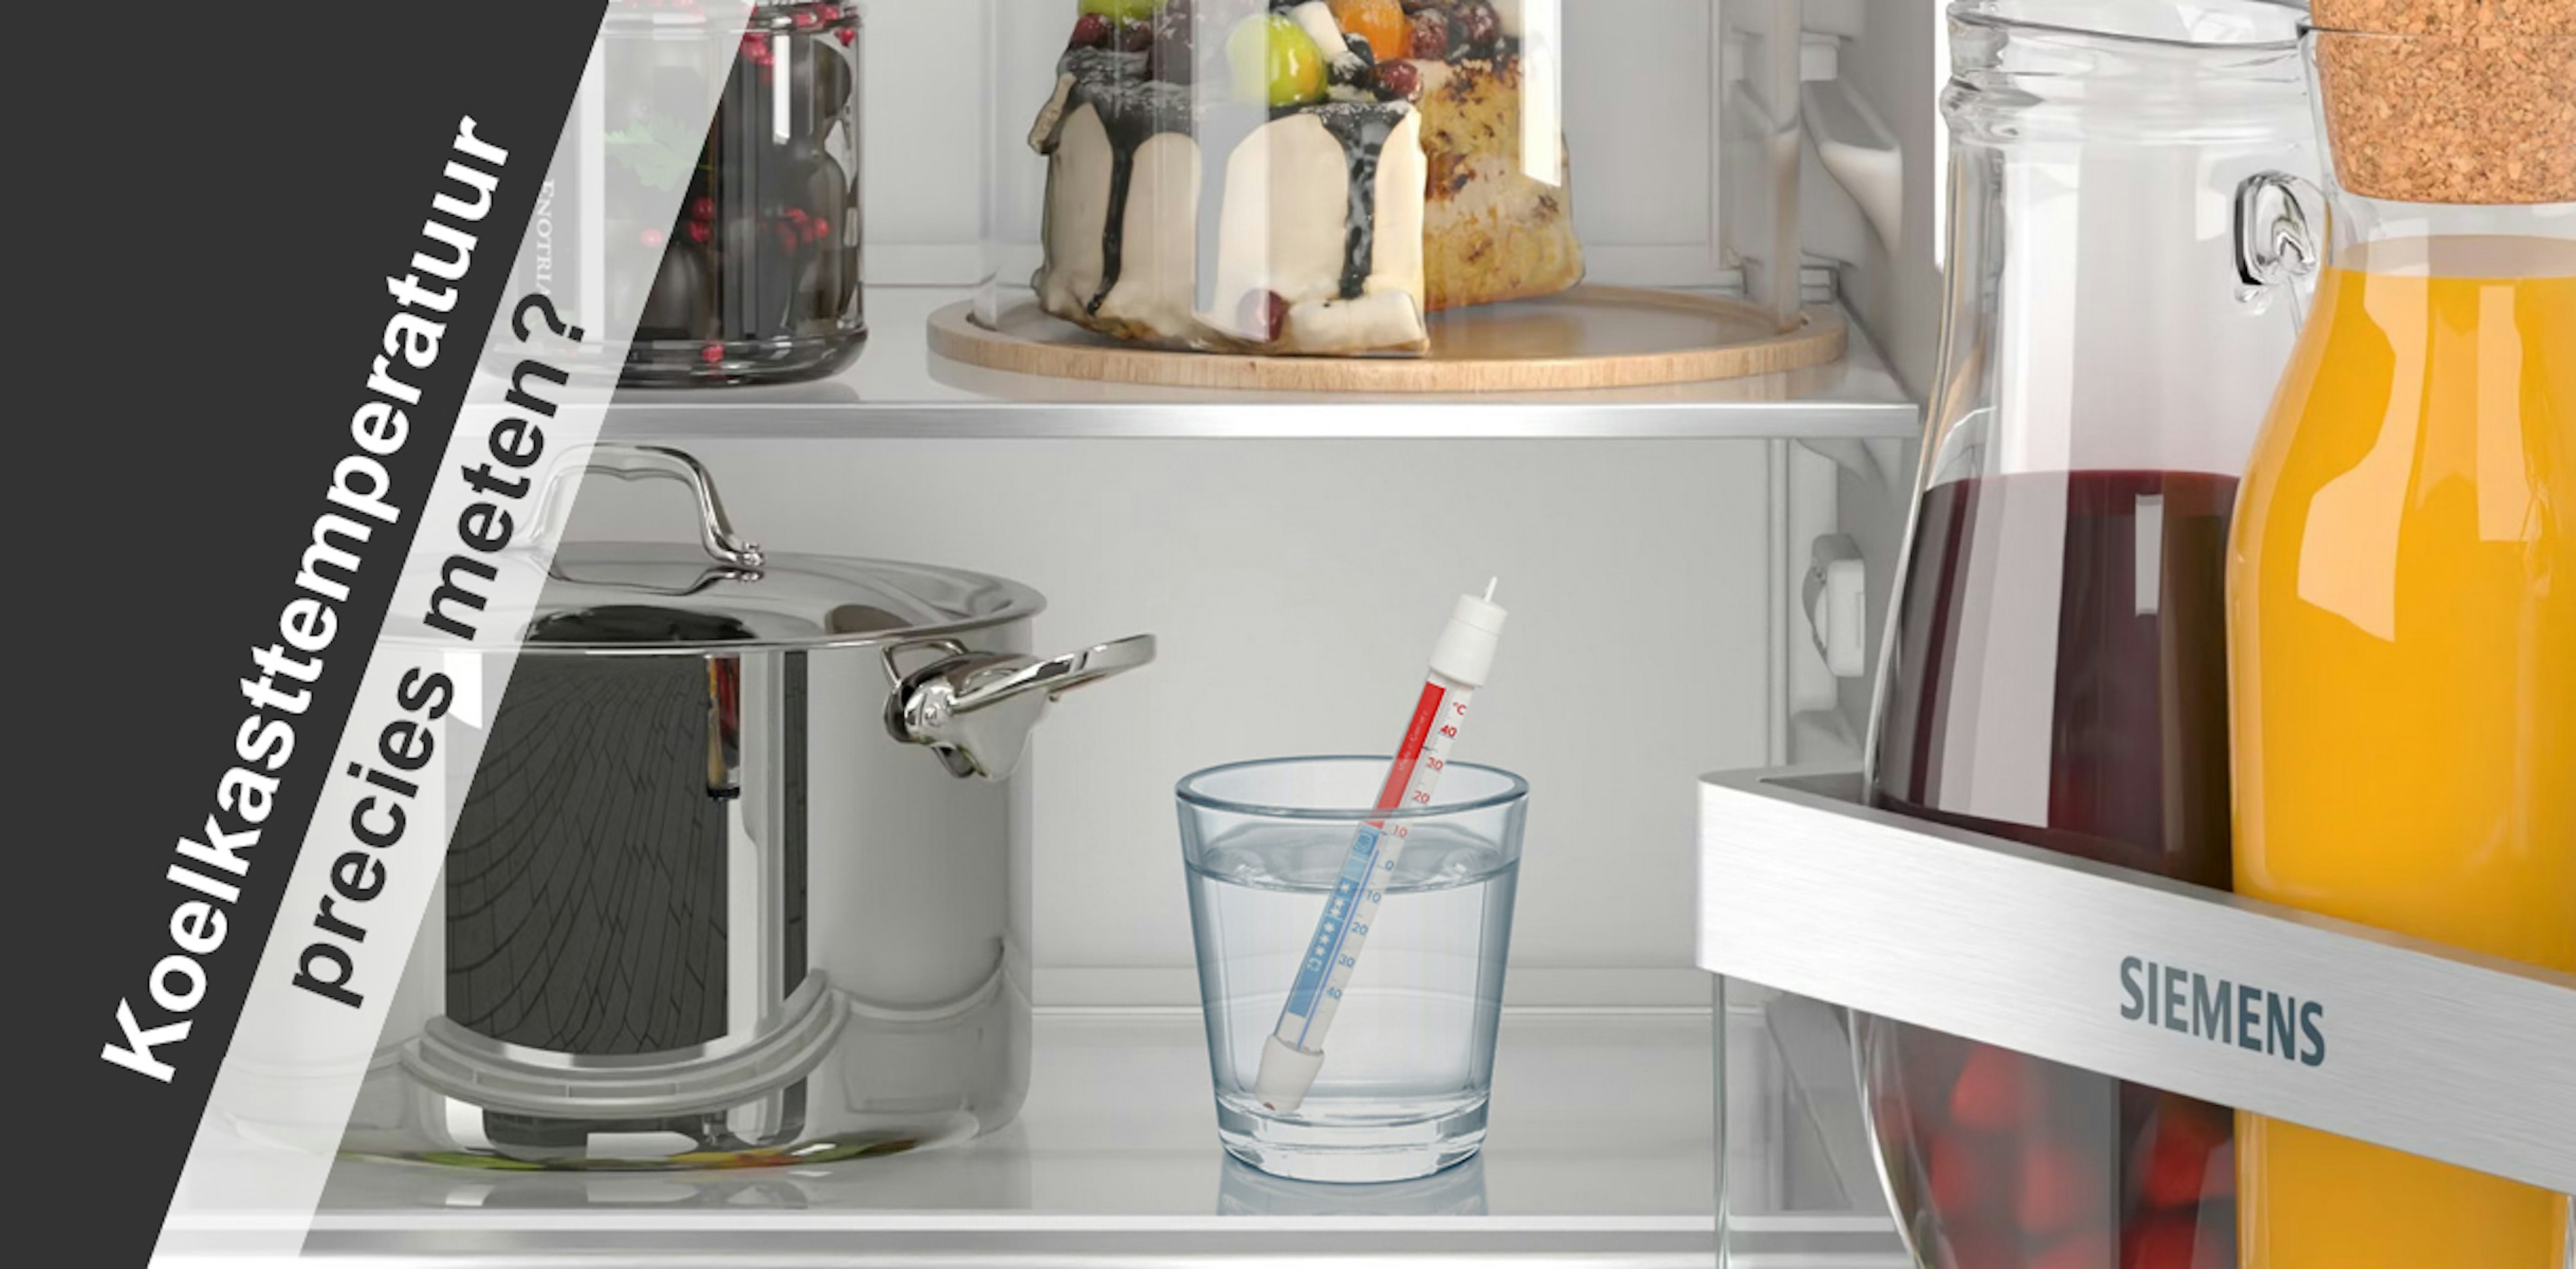 De juiste koelkast temperatuur meten doe je met een thermometer in een glas water.